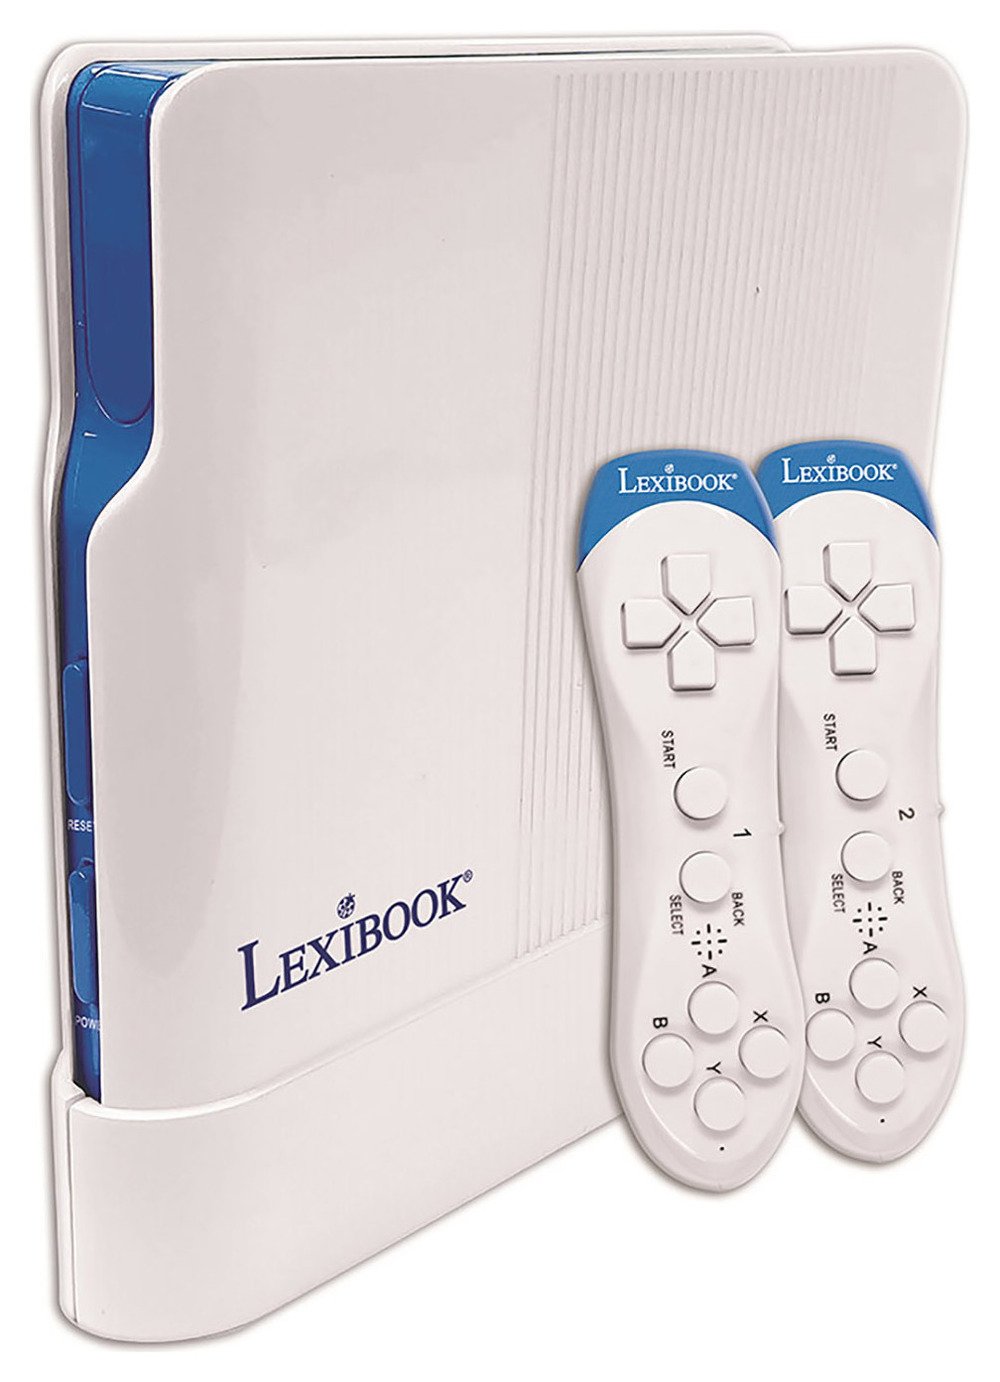 Lexibook TV Game Console